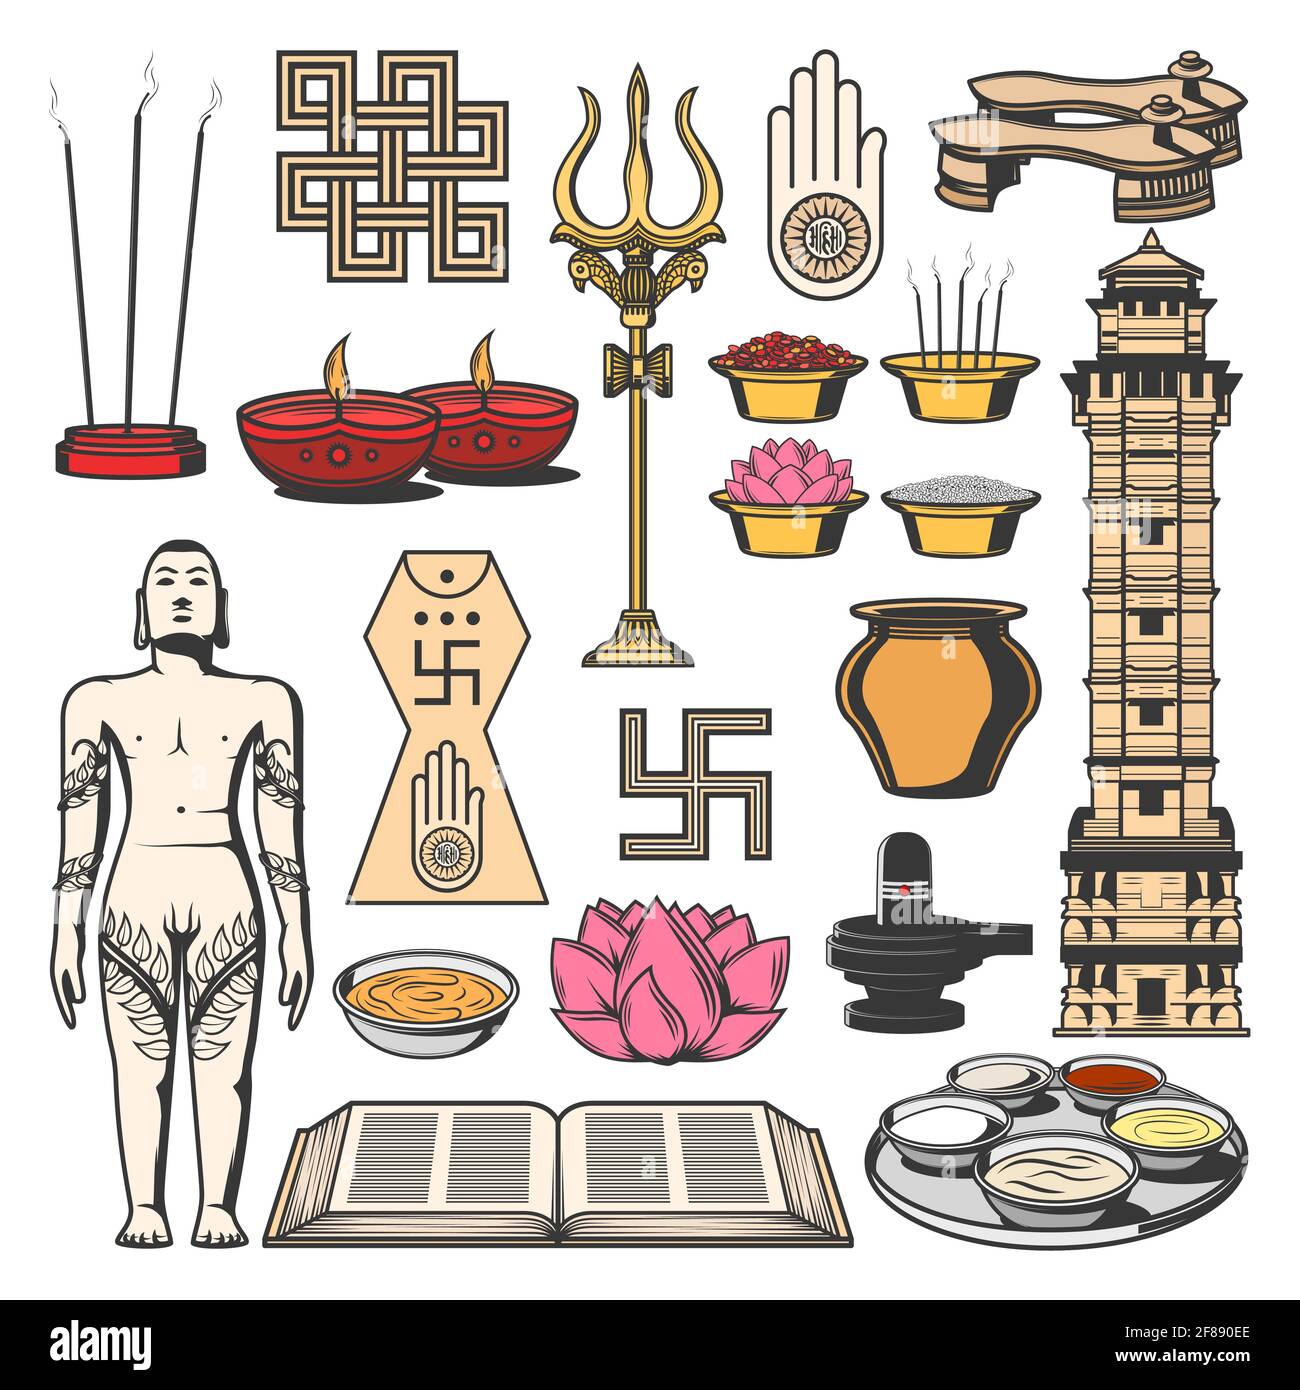 Jainismus Indische Religion Symbole mit Vektor-Skizzen von Jain Dharma, ahimsa und kalash Topf. Jain Prateek Chienna, Diya-Lampen, Lotus, Lingam und Shrivat Stock Vektor